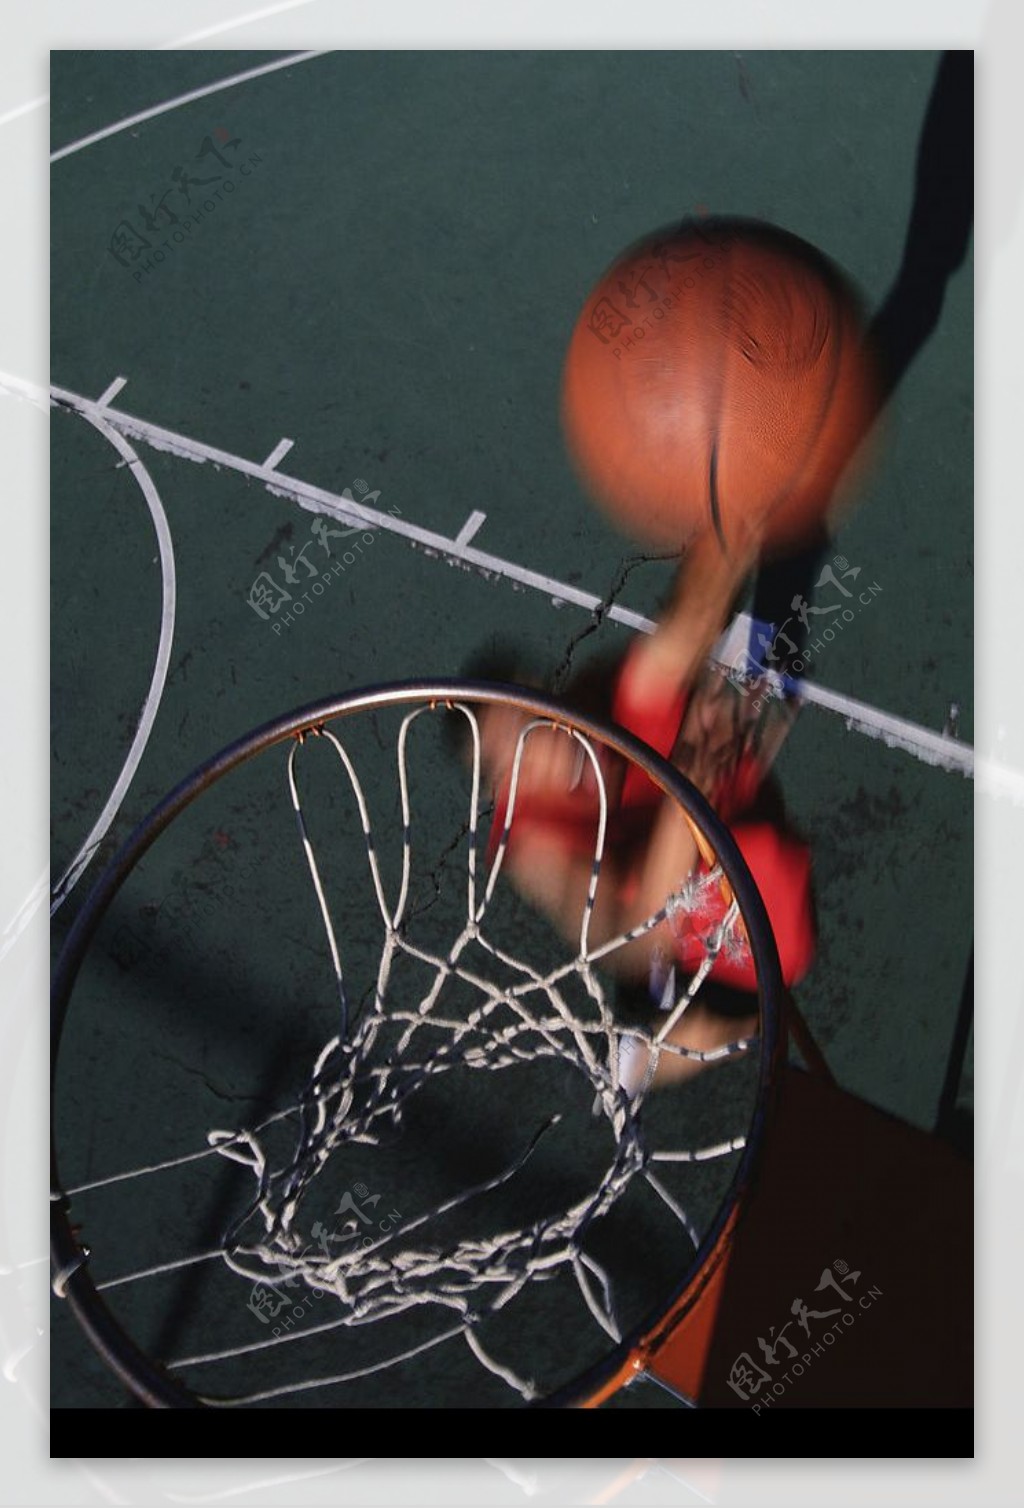 篮球人物图片